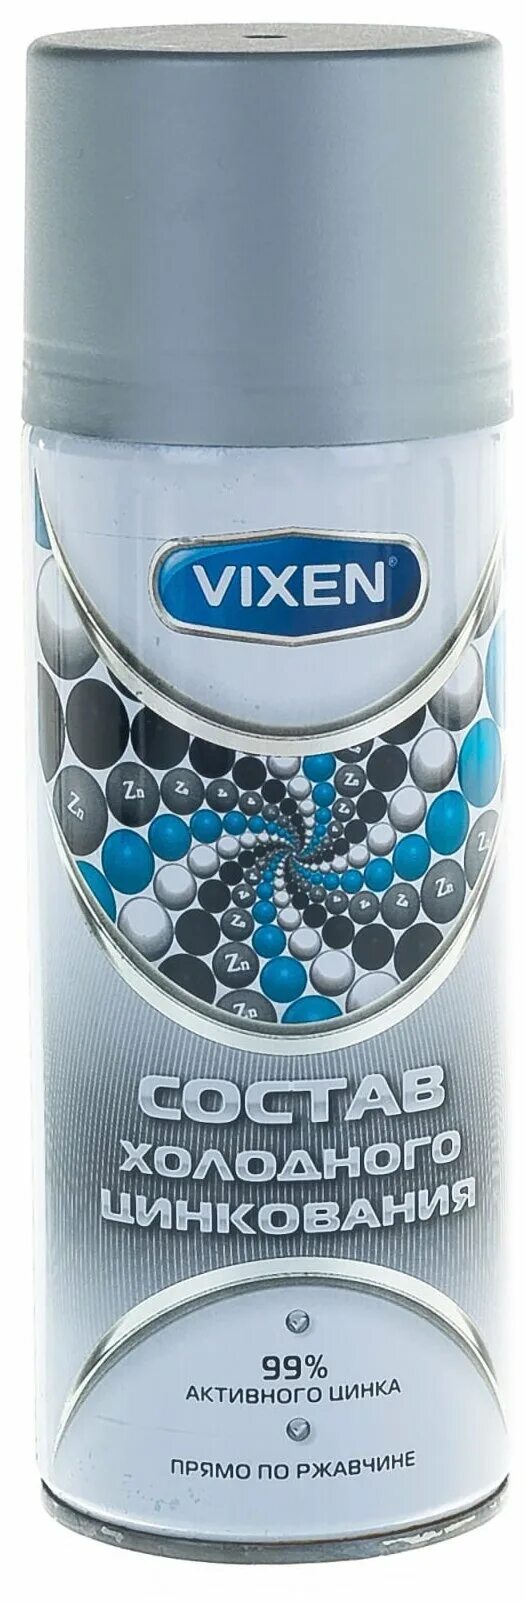 Состав холодного цинкования vixen. Vixen VX-23000 аэрозоль. Состав холодного цинкования Vixen аэрозоль, 520 мл vx23000. Состав холодного цинкования, Vixen аэрозоль 520 мл. Виксен состав холодного цинкования, аэрозоль 520мл.